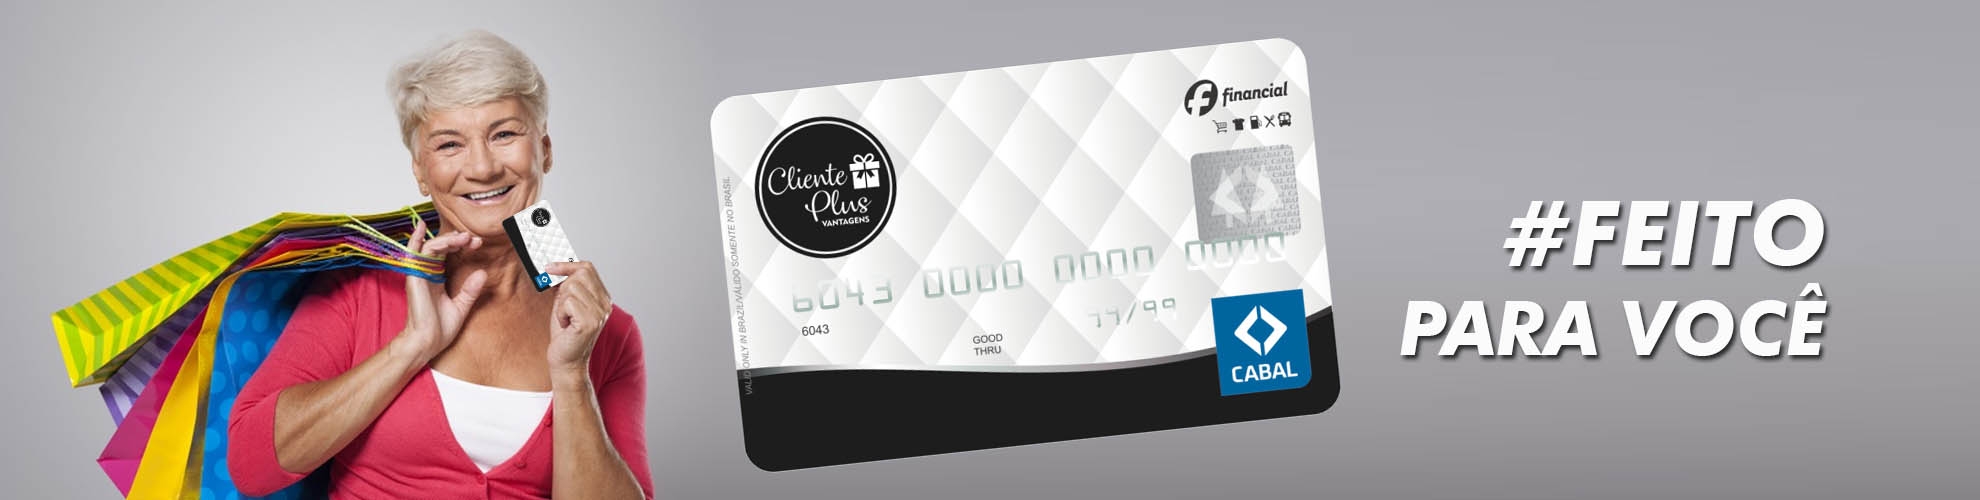 Cartão Cliente Plus - Crédito